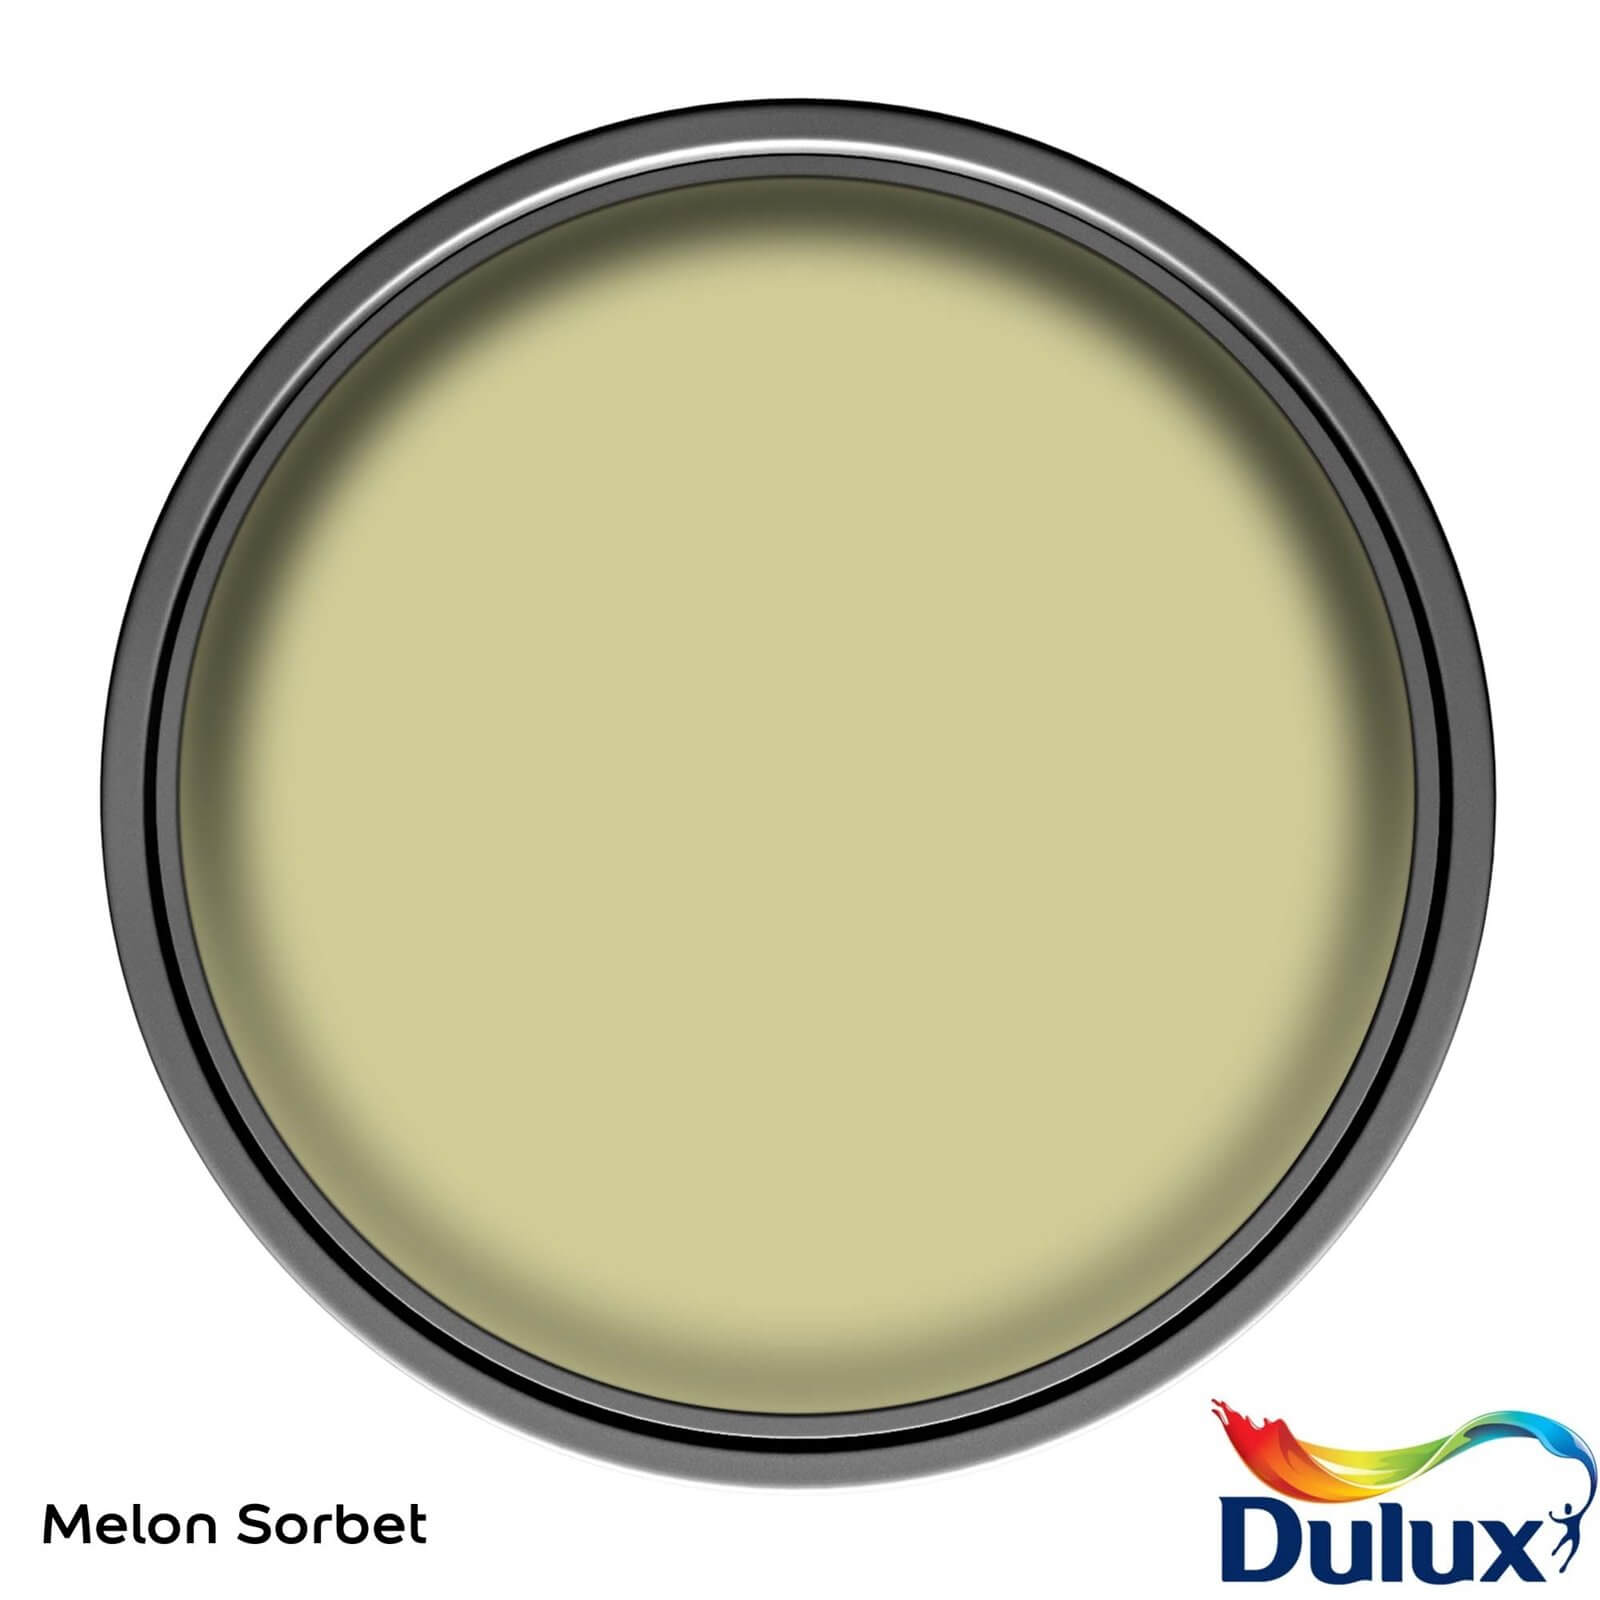 Dulux Silk Emulsion Paint Melon Sorbet - 2.5L